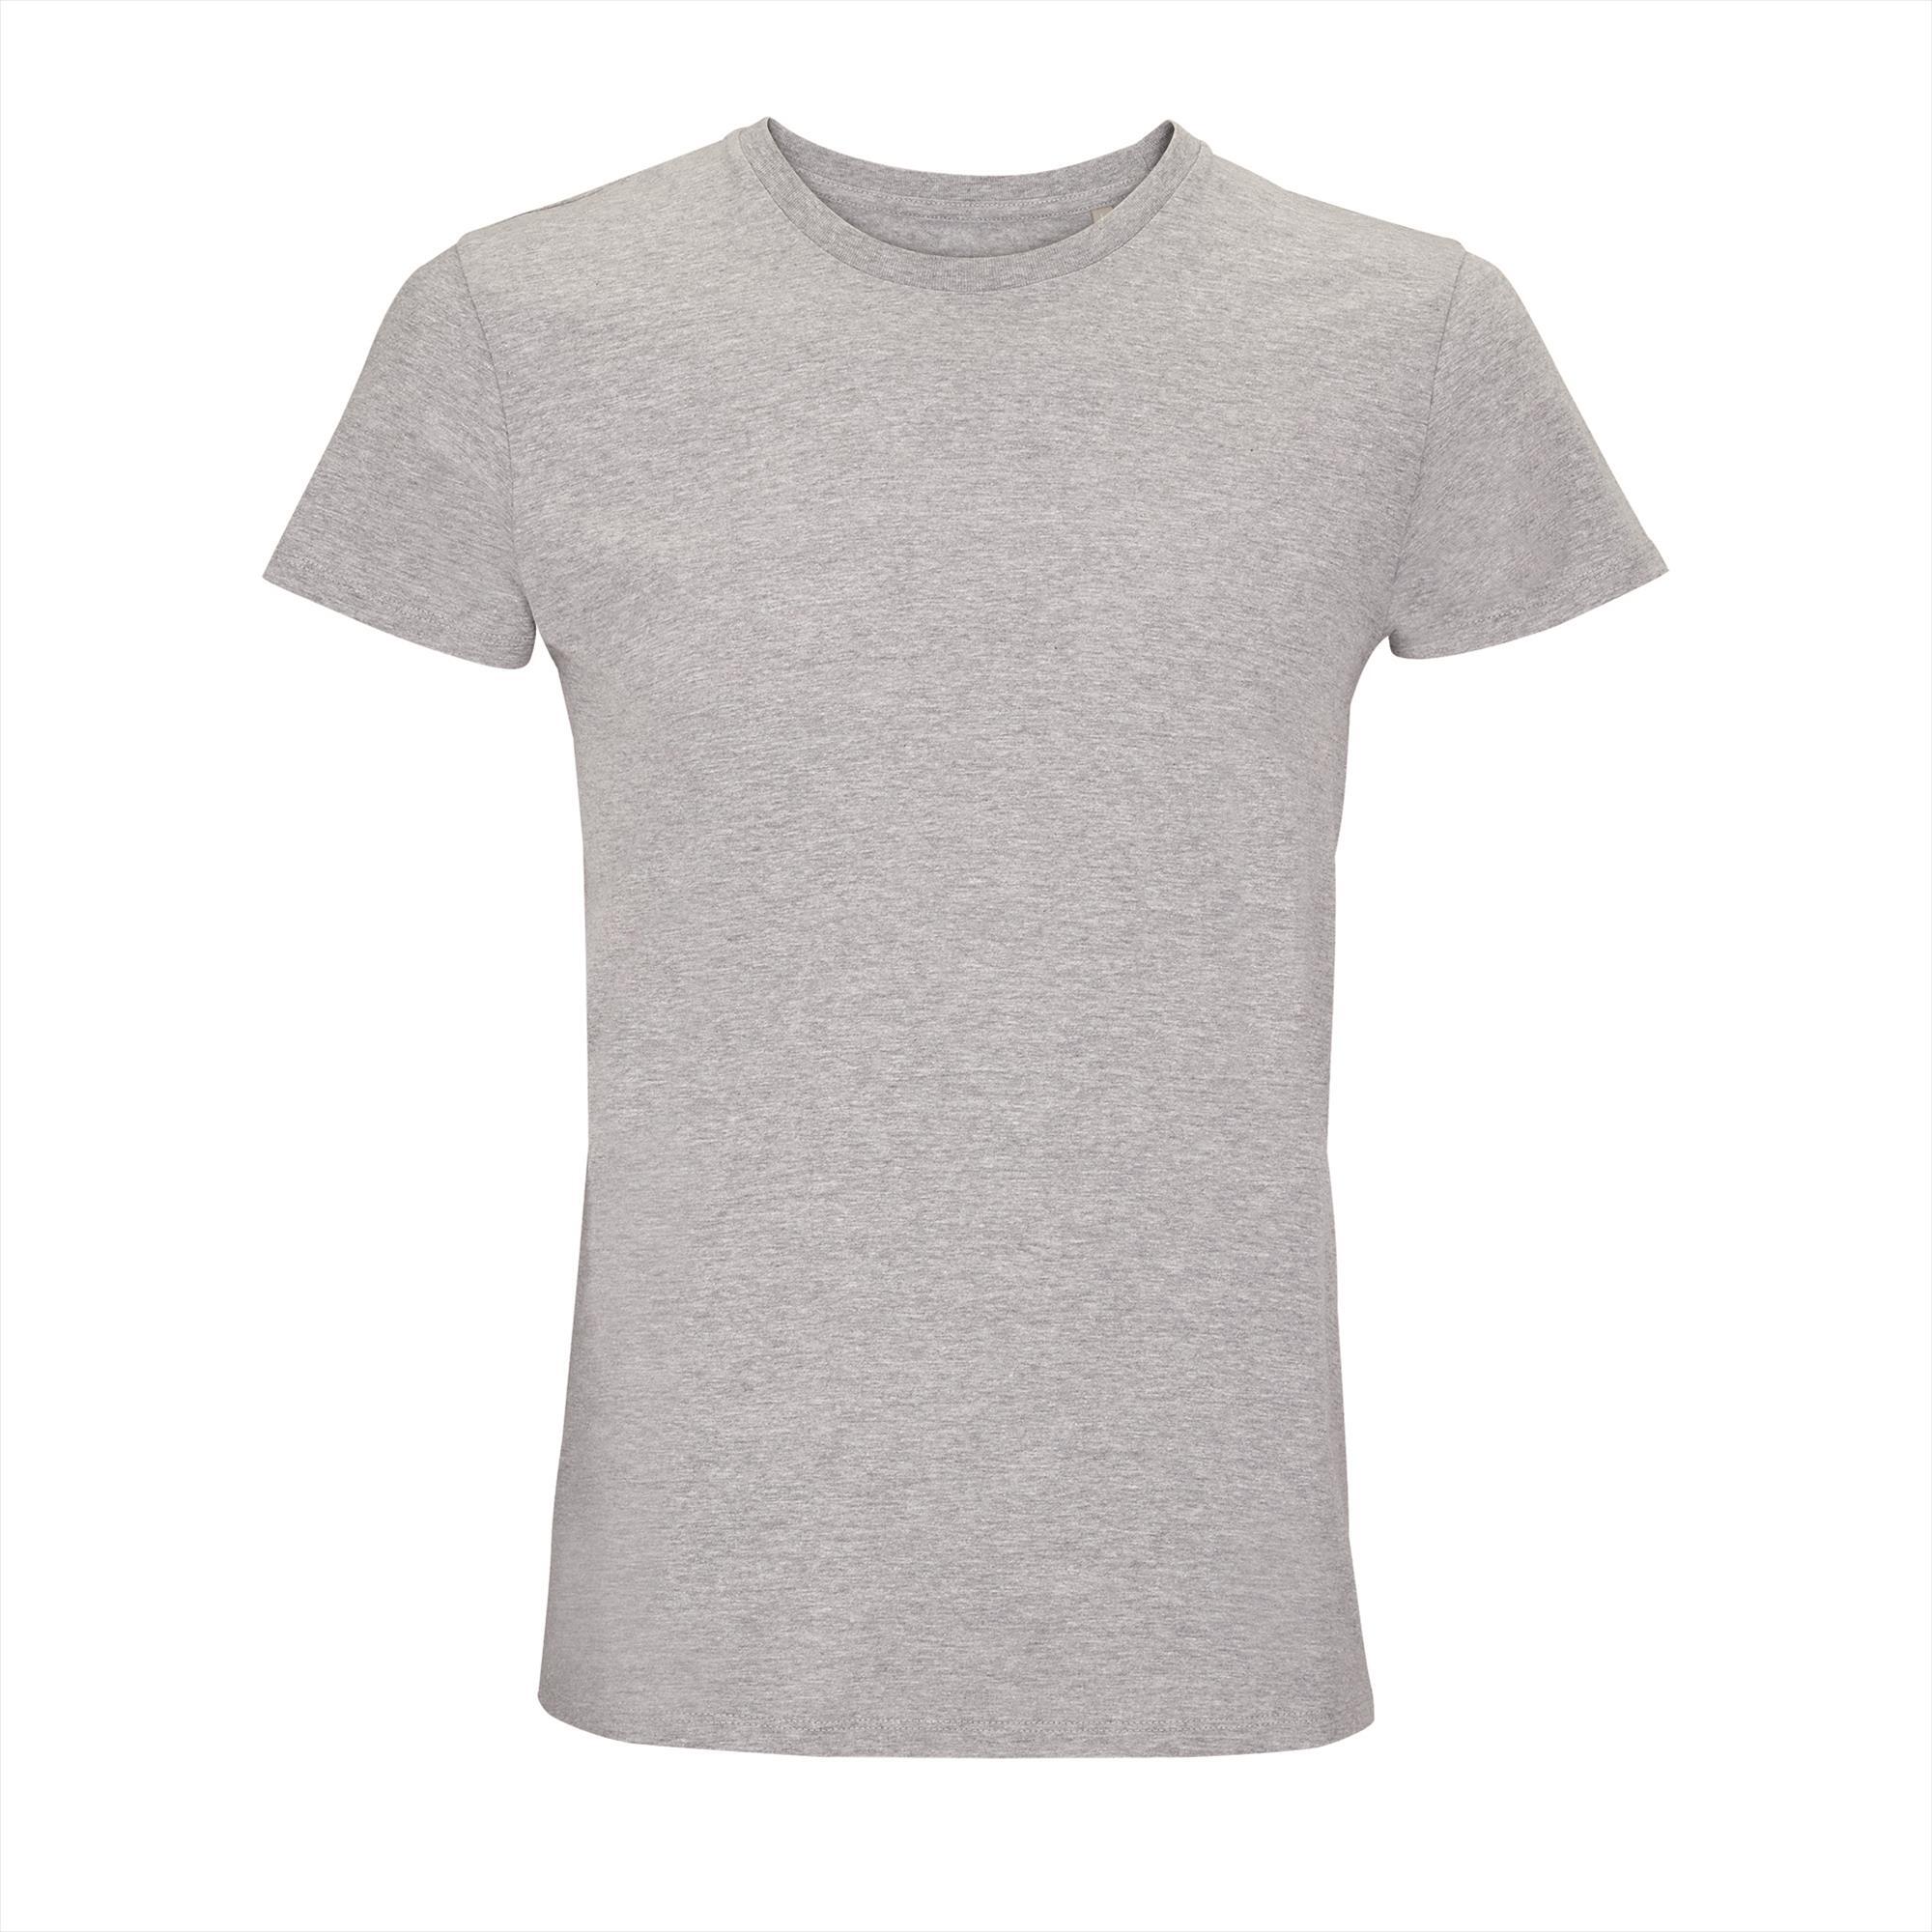 Unisex T-shirt heren grijs melange bedrukbaar